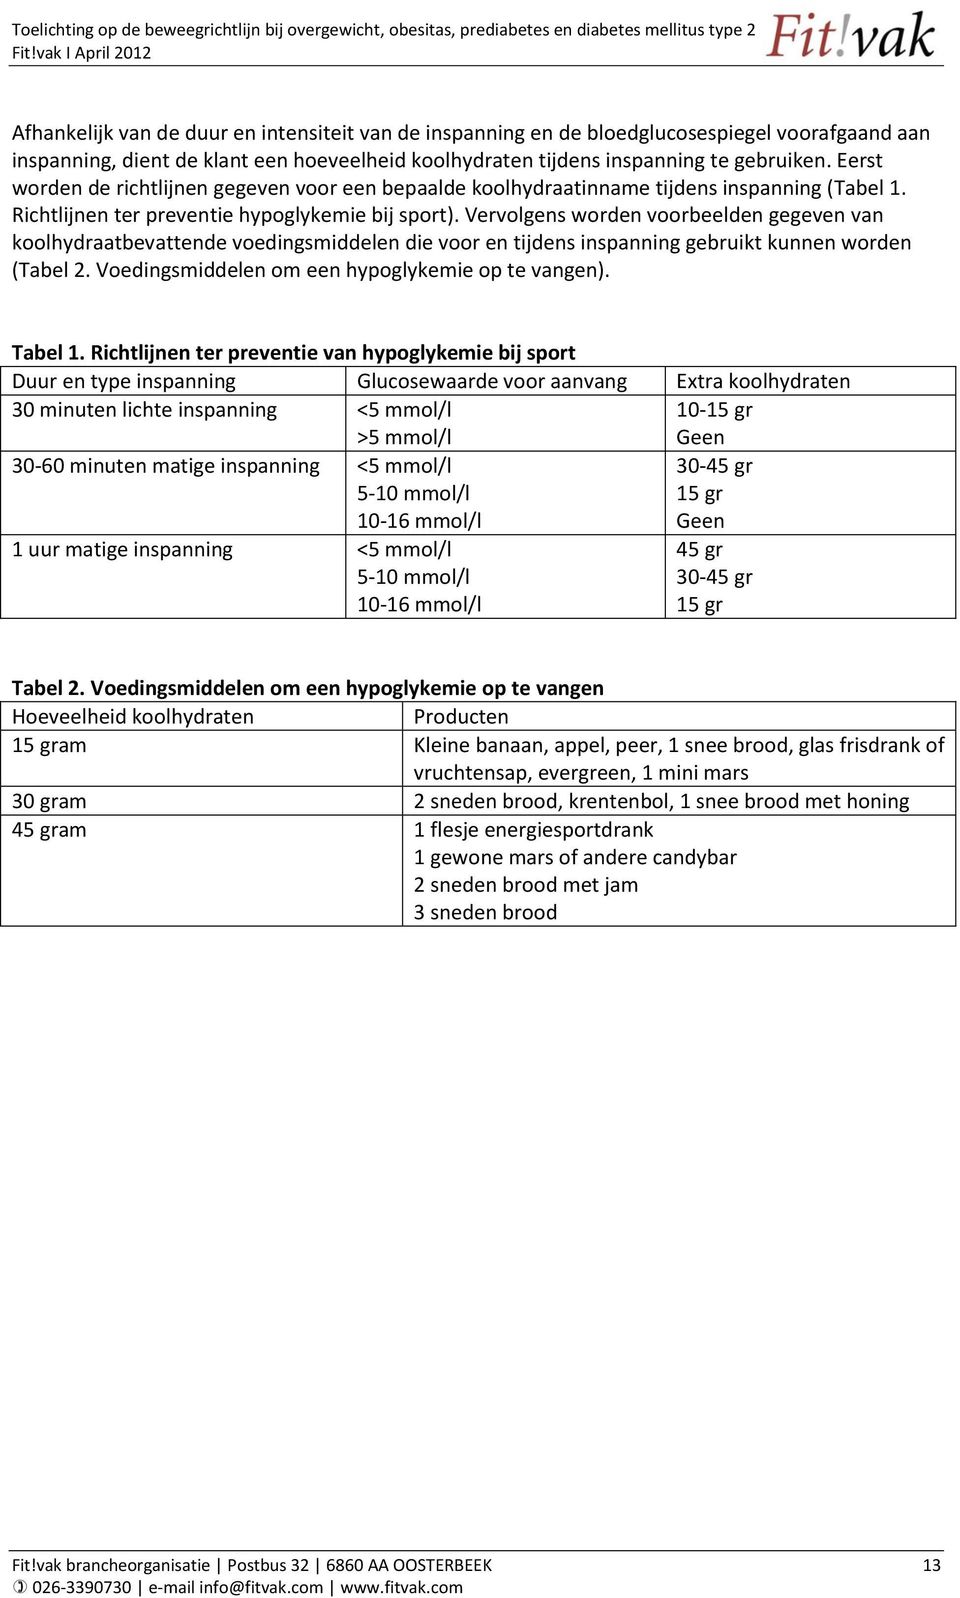 Vervolgens worden voorbeelden gegeven van koolhydraatbevattende voedingsmiddelen die voor en tijdens inspanning gebruikt kunnen worden (Tabel 2. Voedingsmiddelen om een hypoglykemie op te vangen).